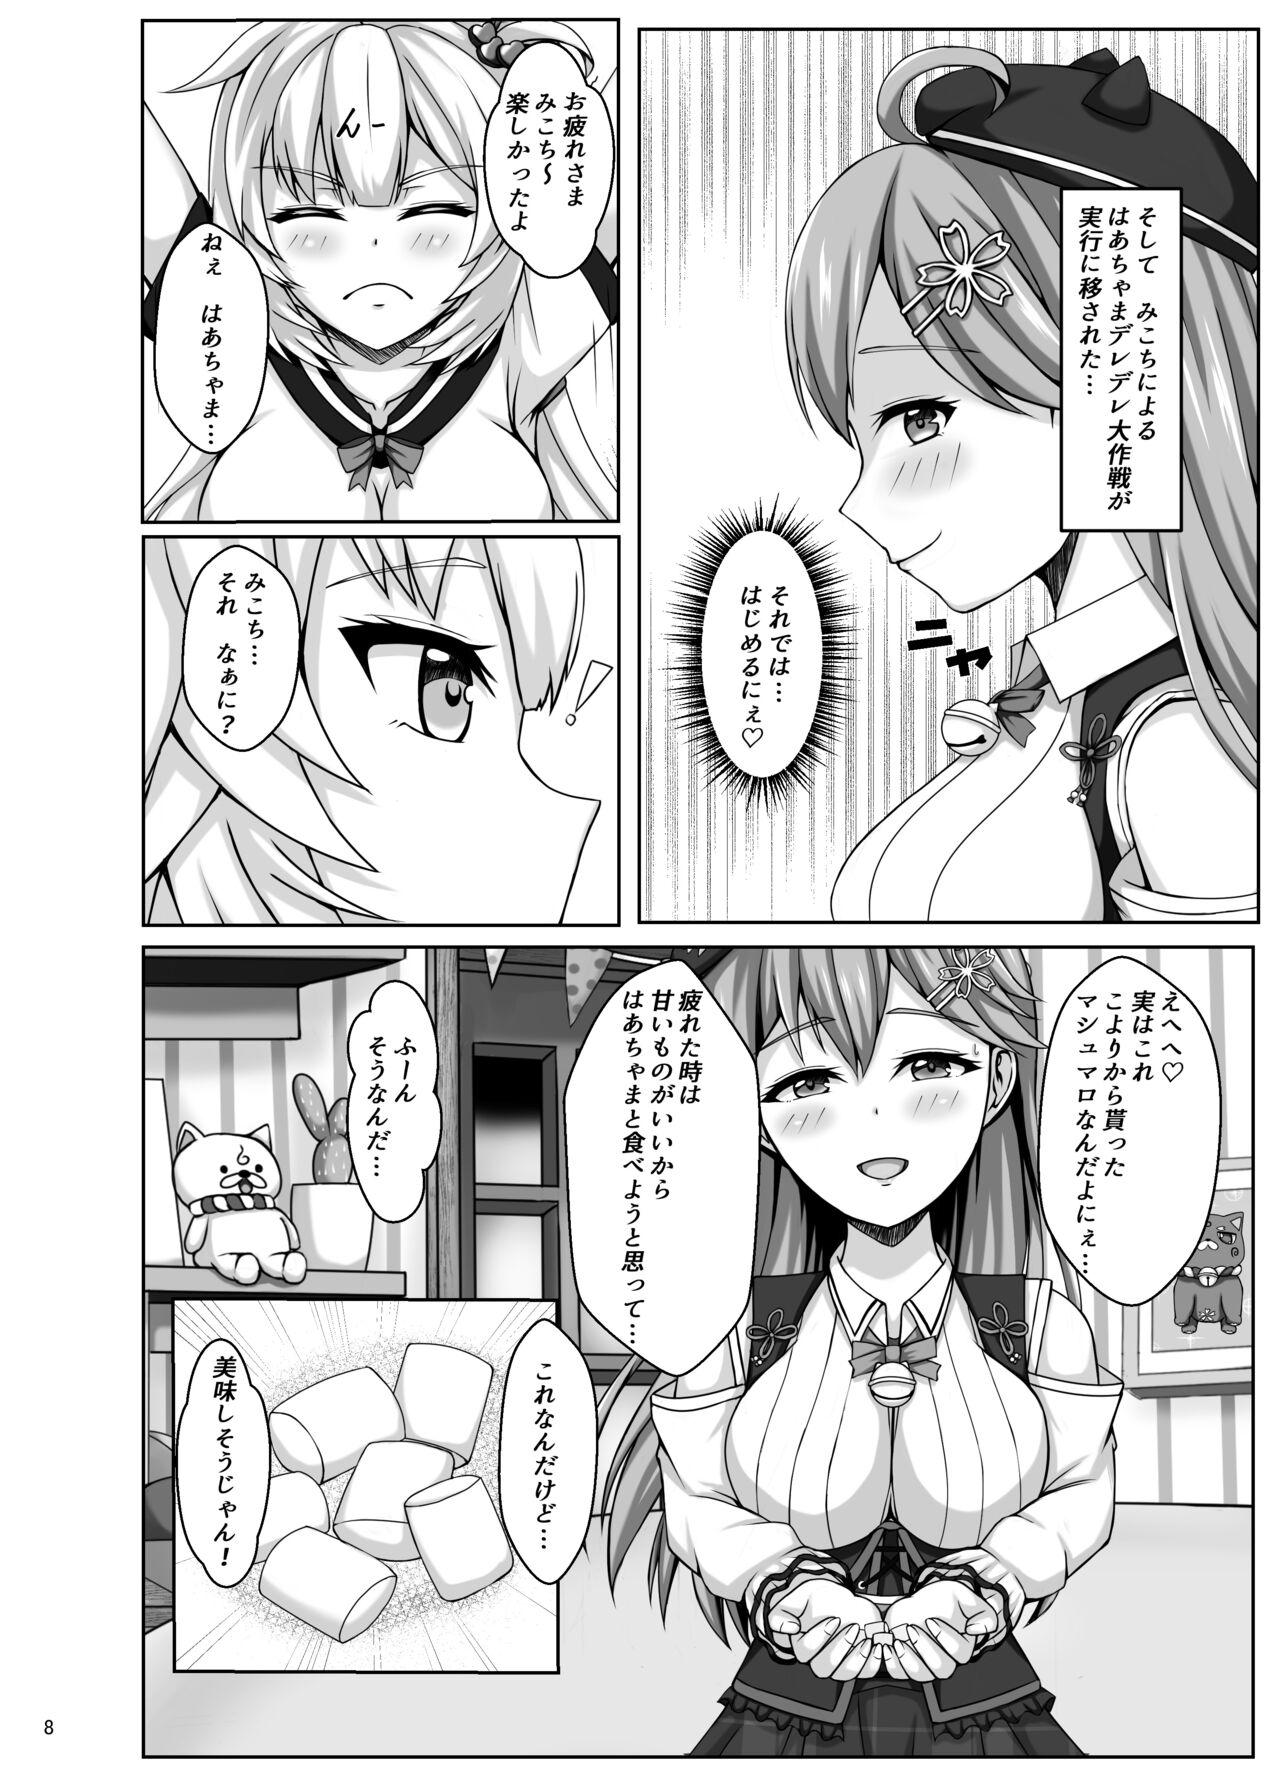 Reversecowgirl Mikochi wa Shittenai - Hololive Bwc - Page 8